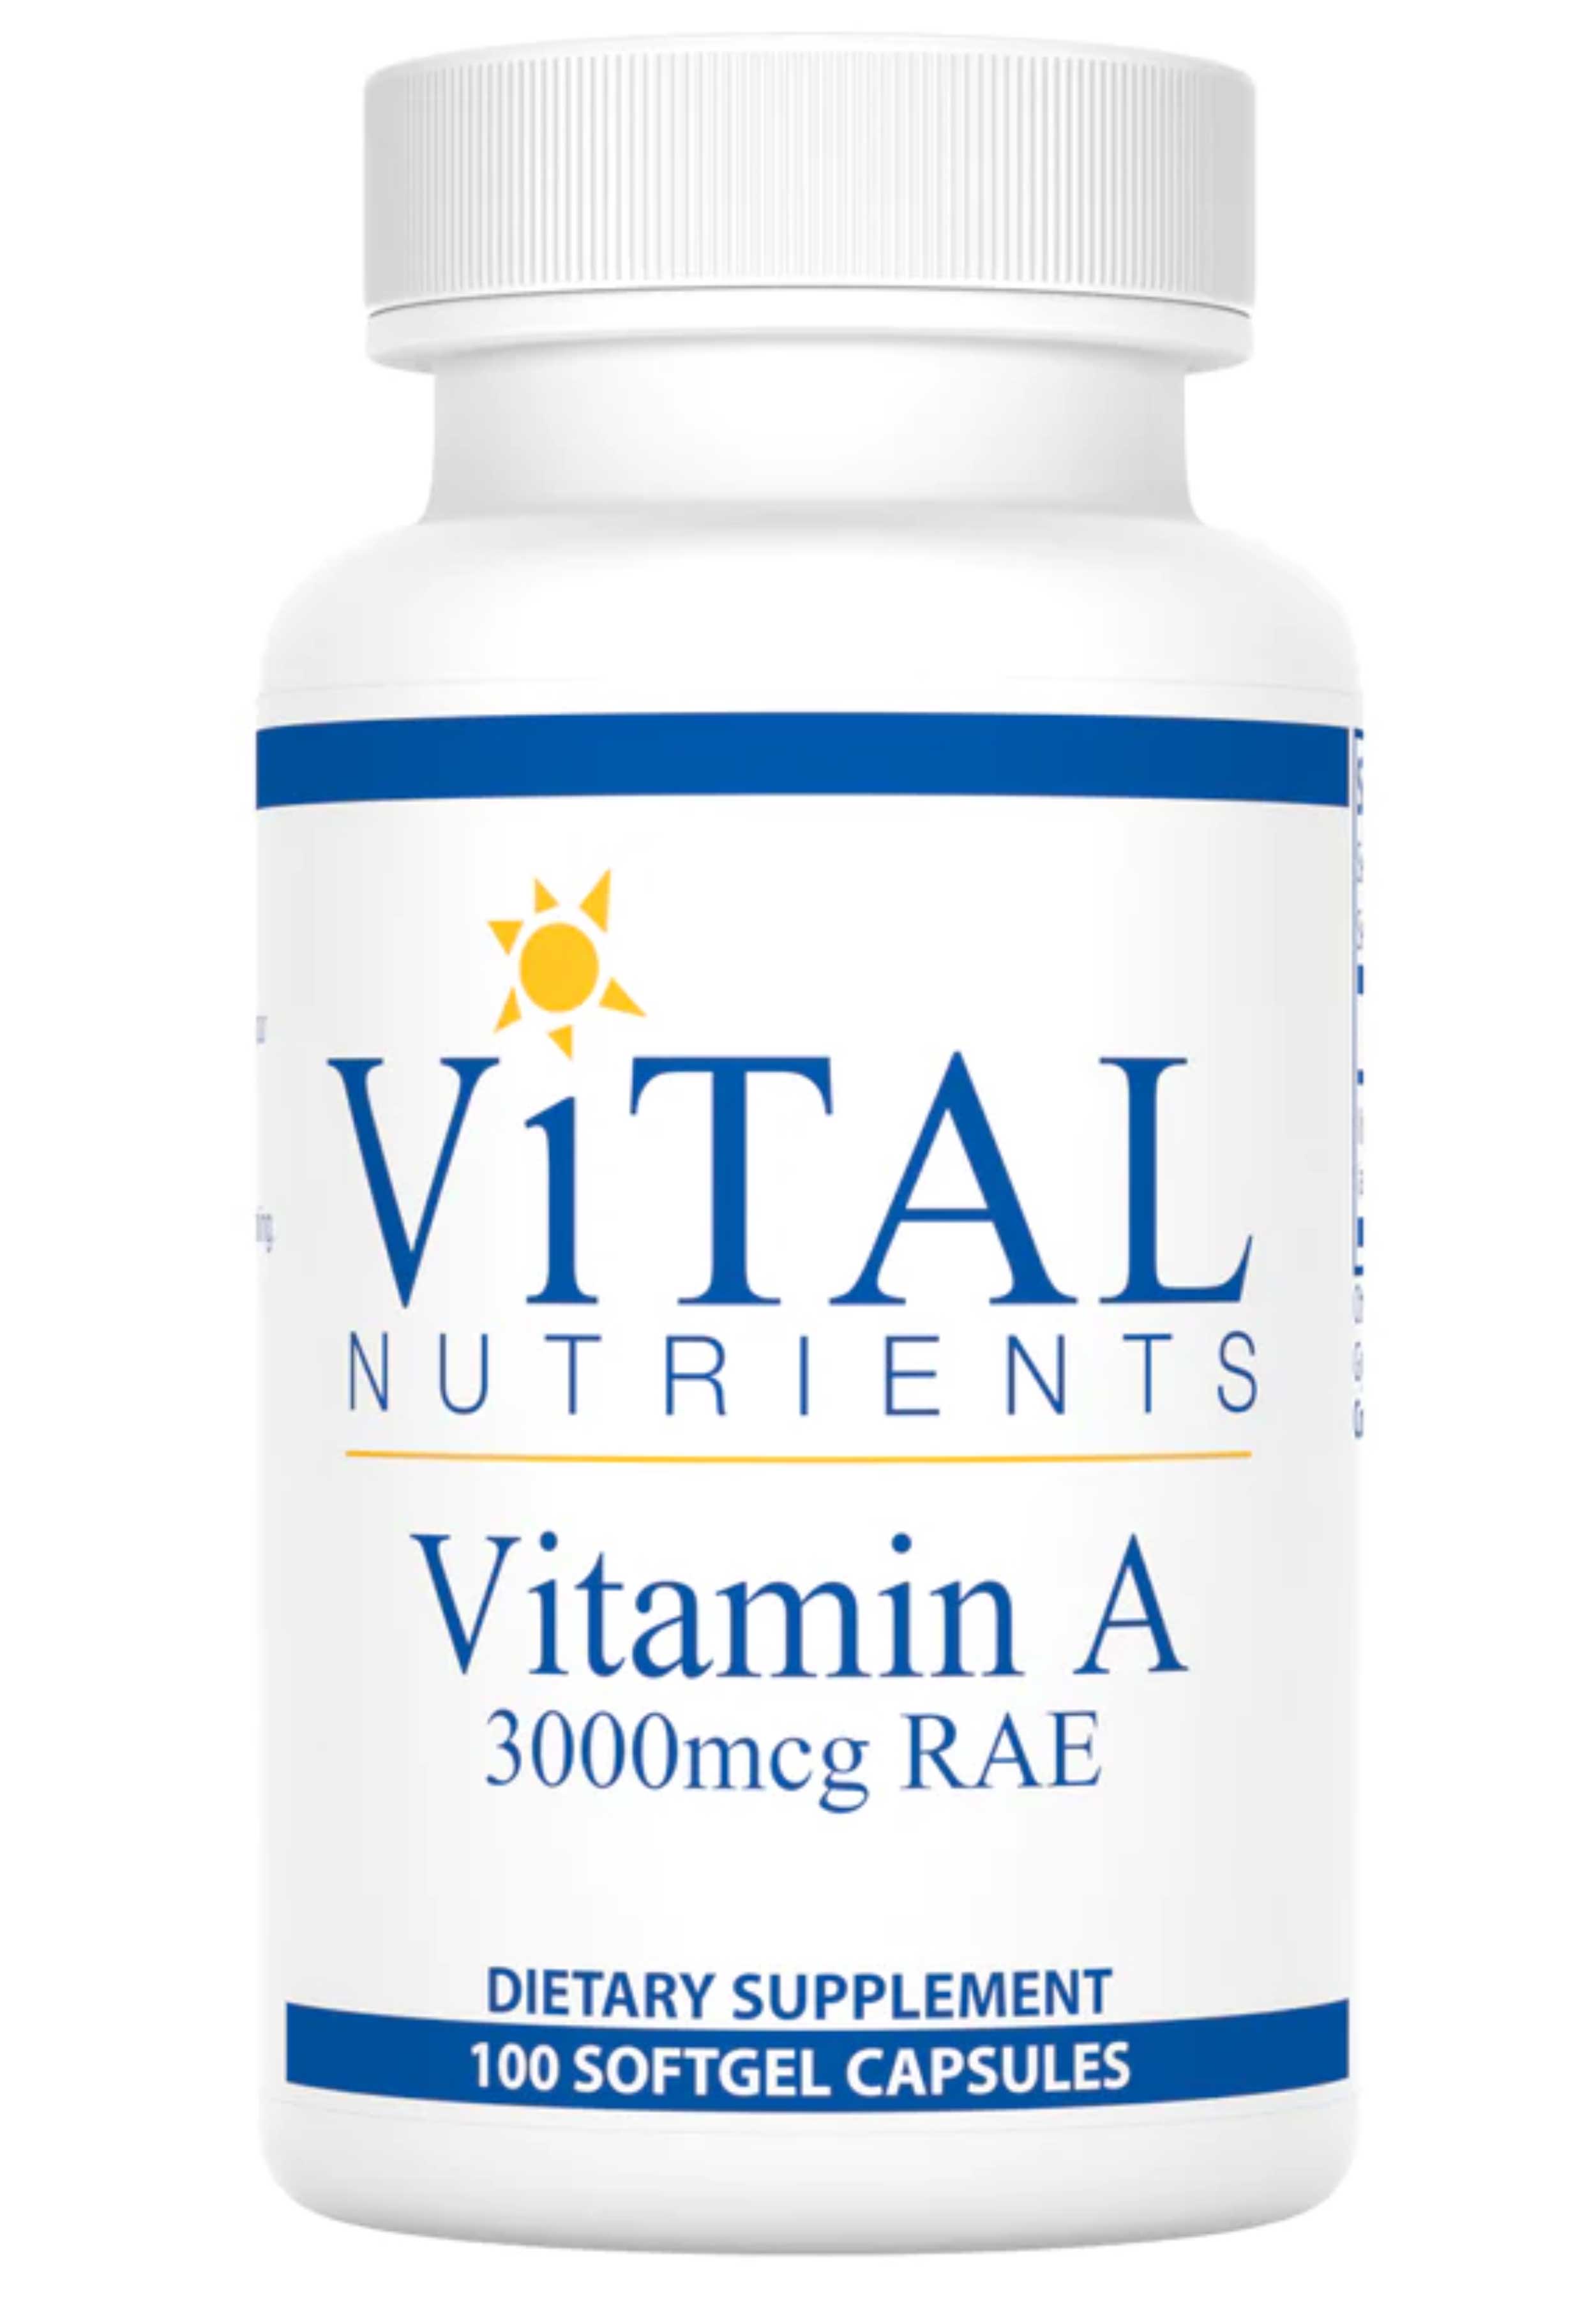 Vital Nutrients Vitamin A 3000 mcg RAE